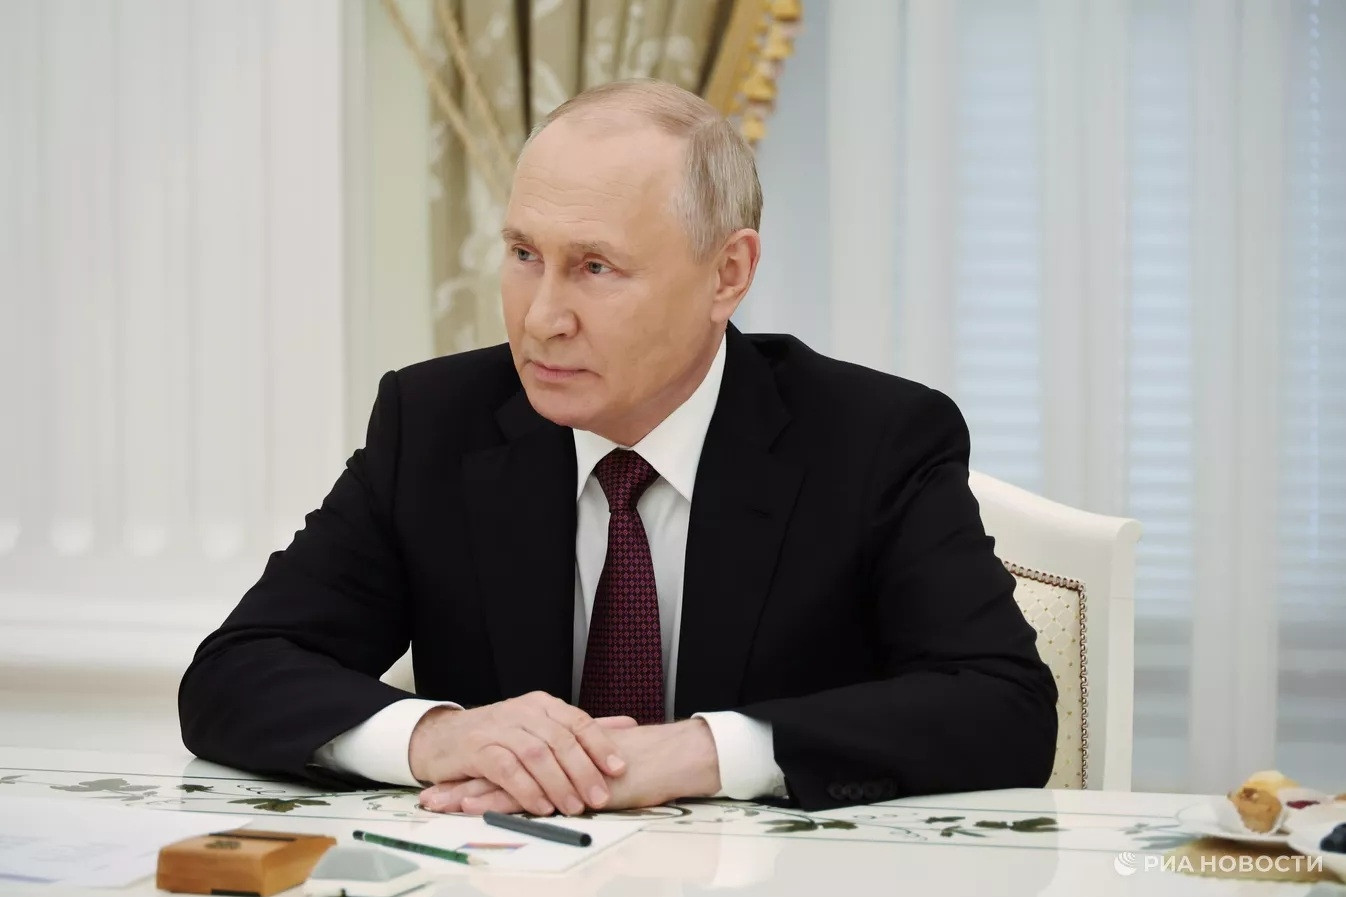 Ông Putin chỉ ra ‘chìa khóa’ giải quyết xung đột Trung Đông